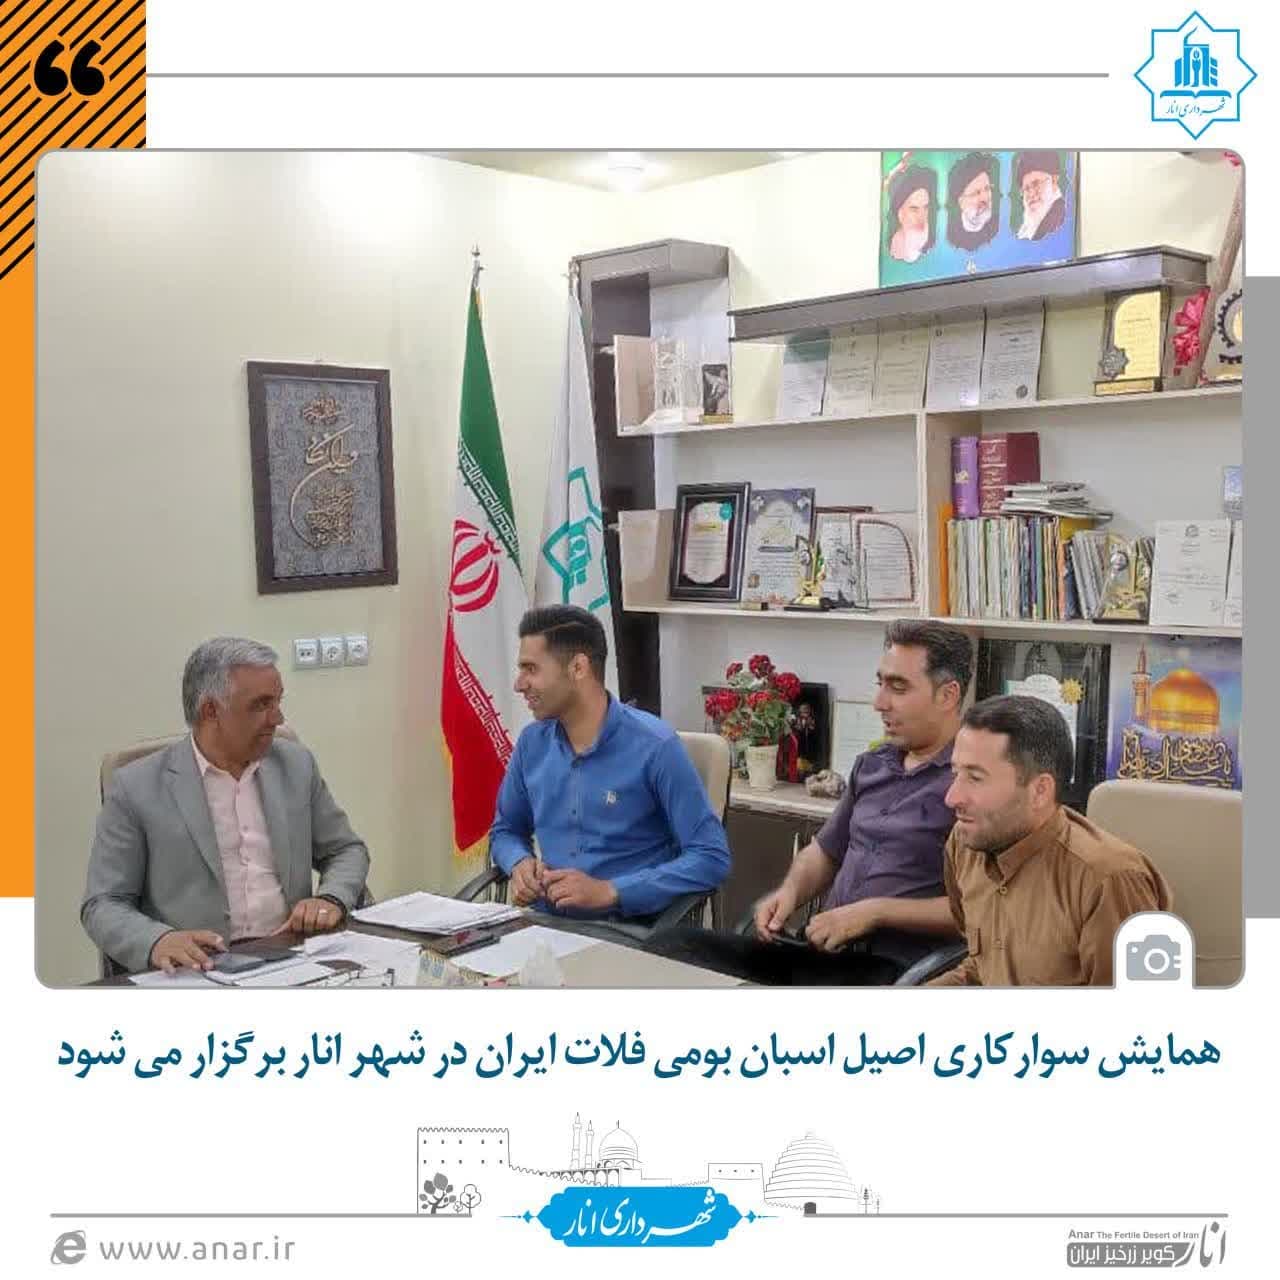 همایش سوارکاری اصیل اسبان بومی فلات ایران در شهر انار برگزار می شود